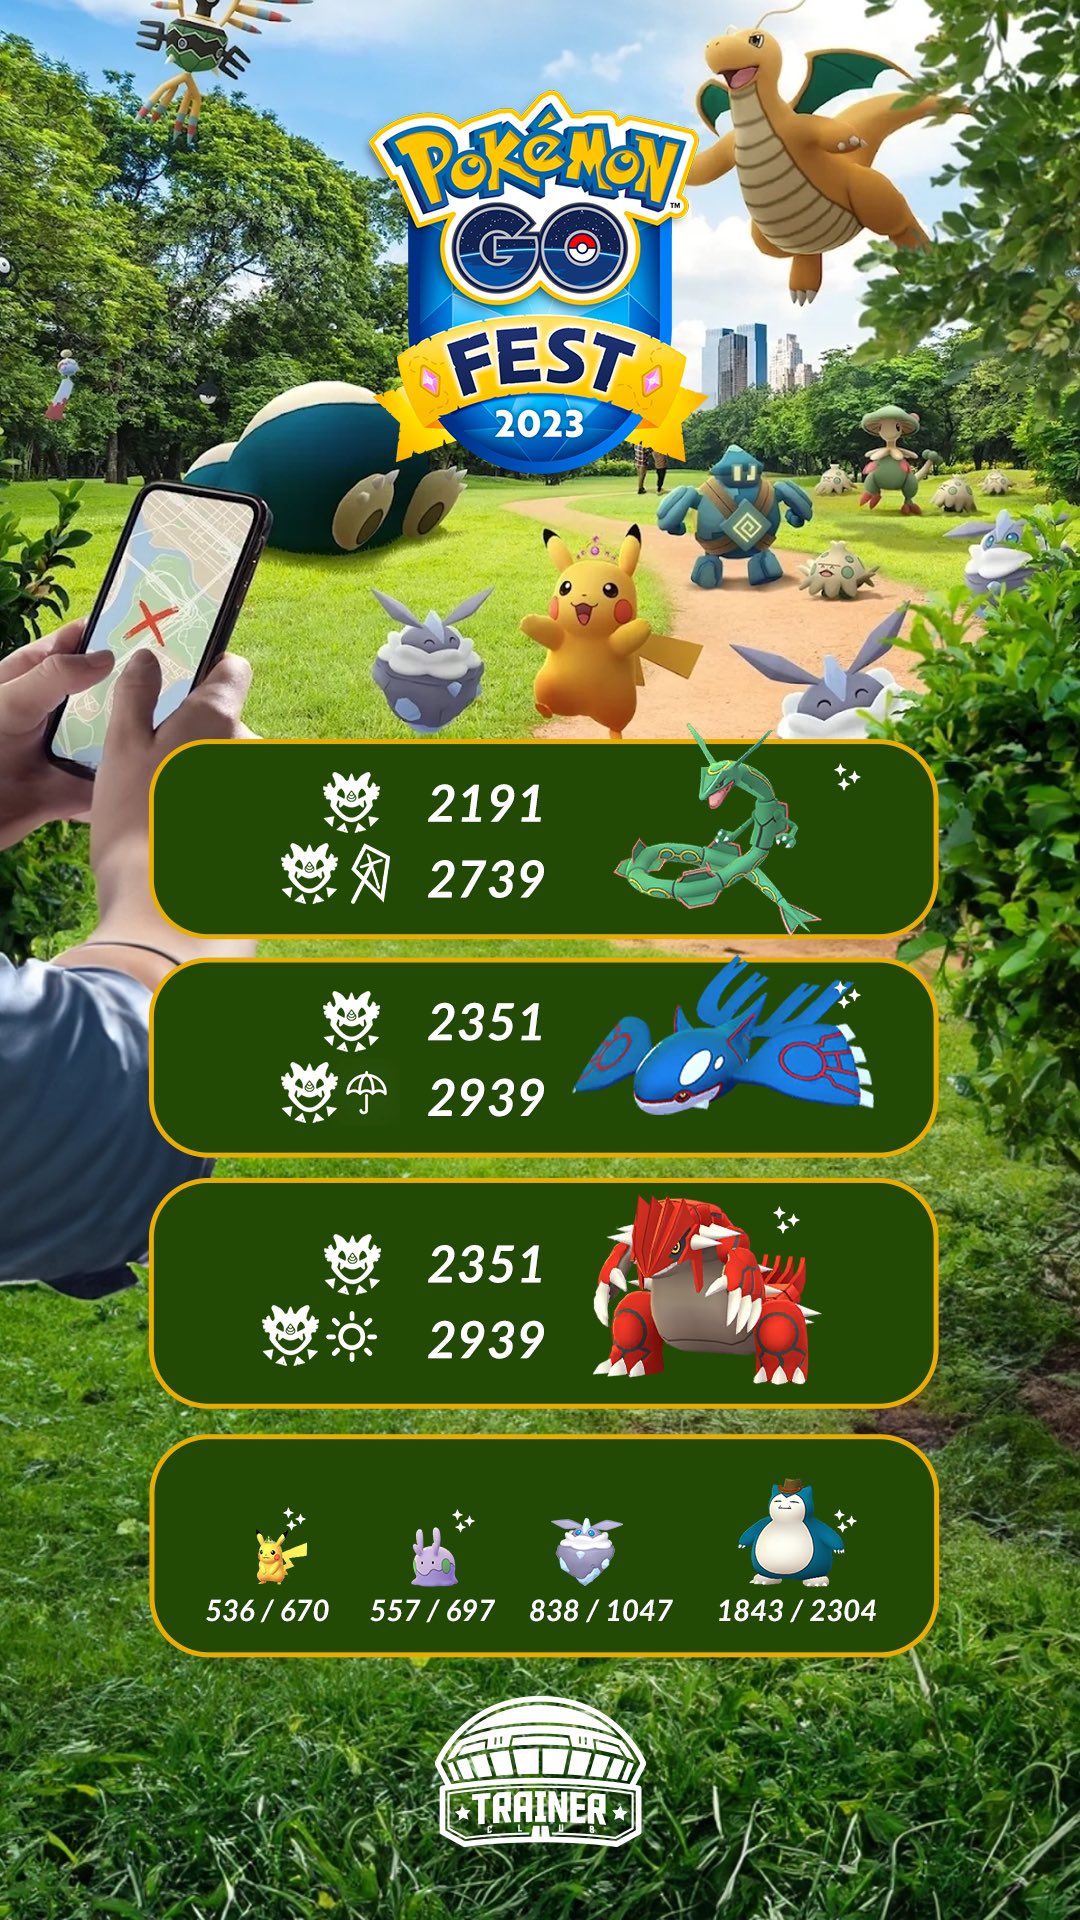 Pokémon GO - Worldwide Trainers Club